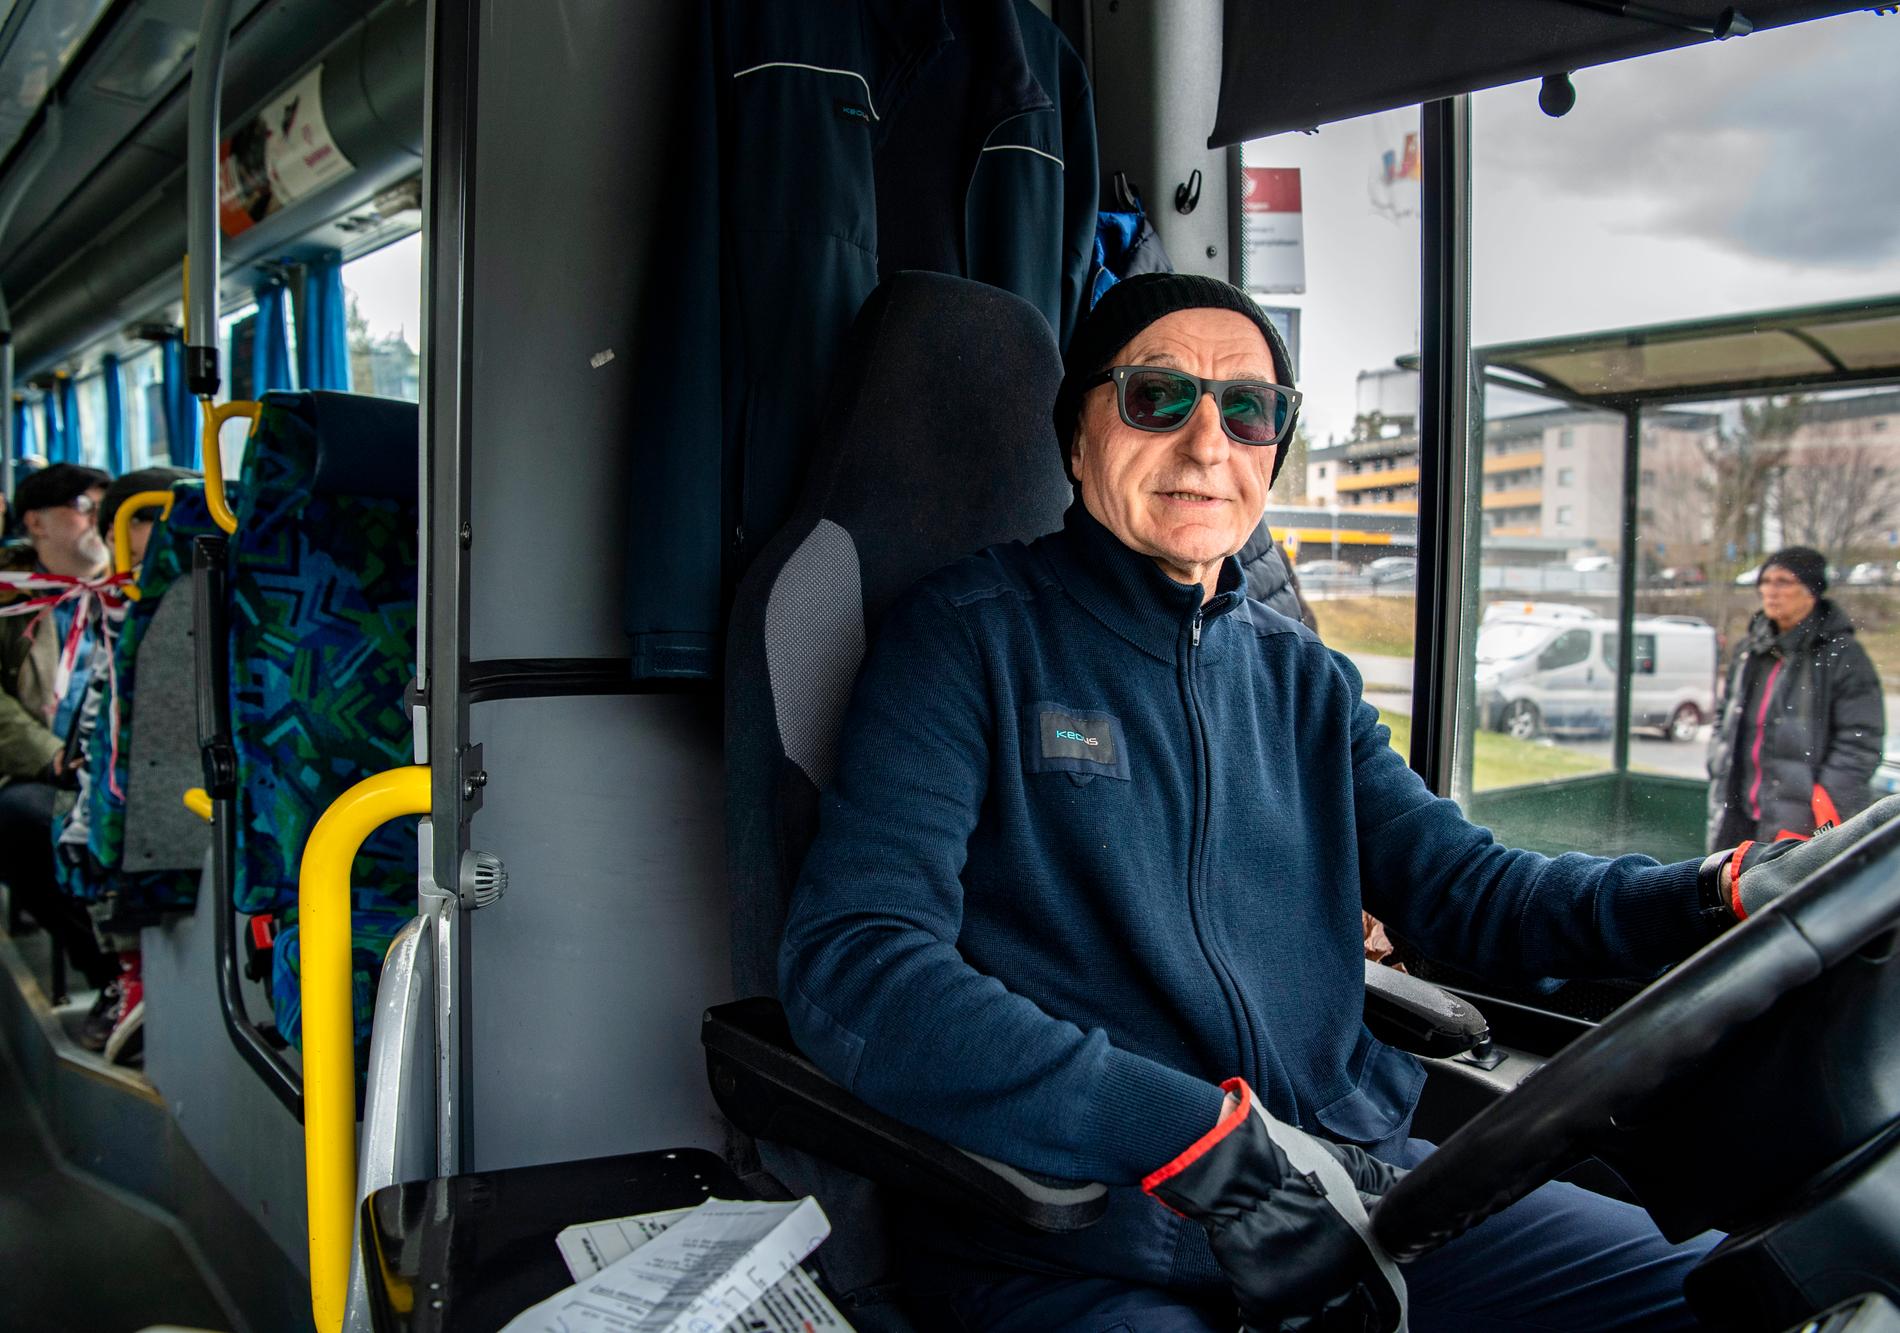 Bahram, 65, kör buss i Värmdö. Han har redan varit sjuk i corona.